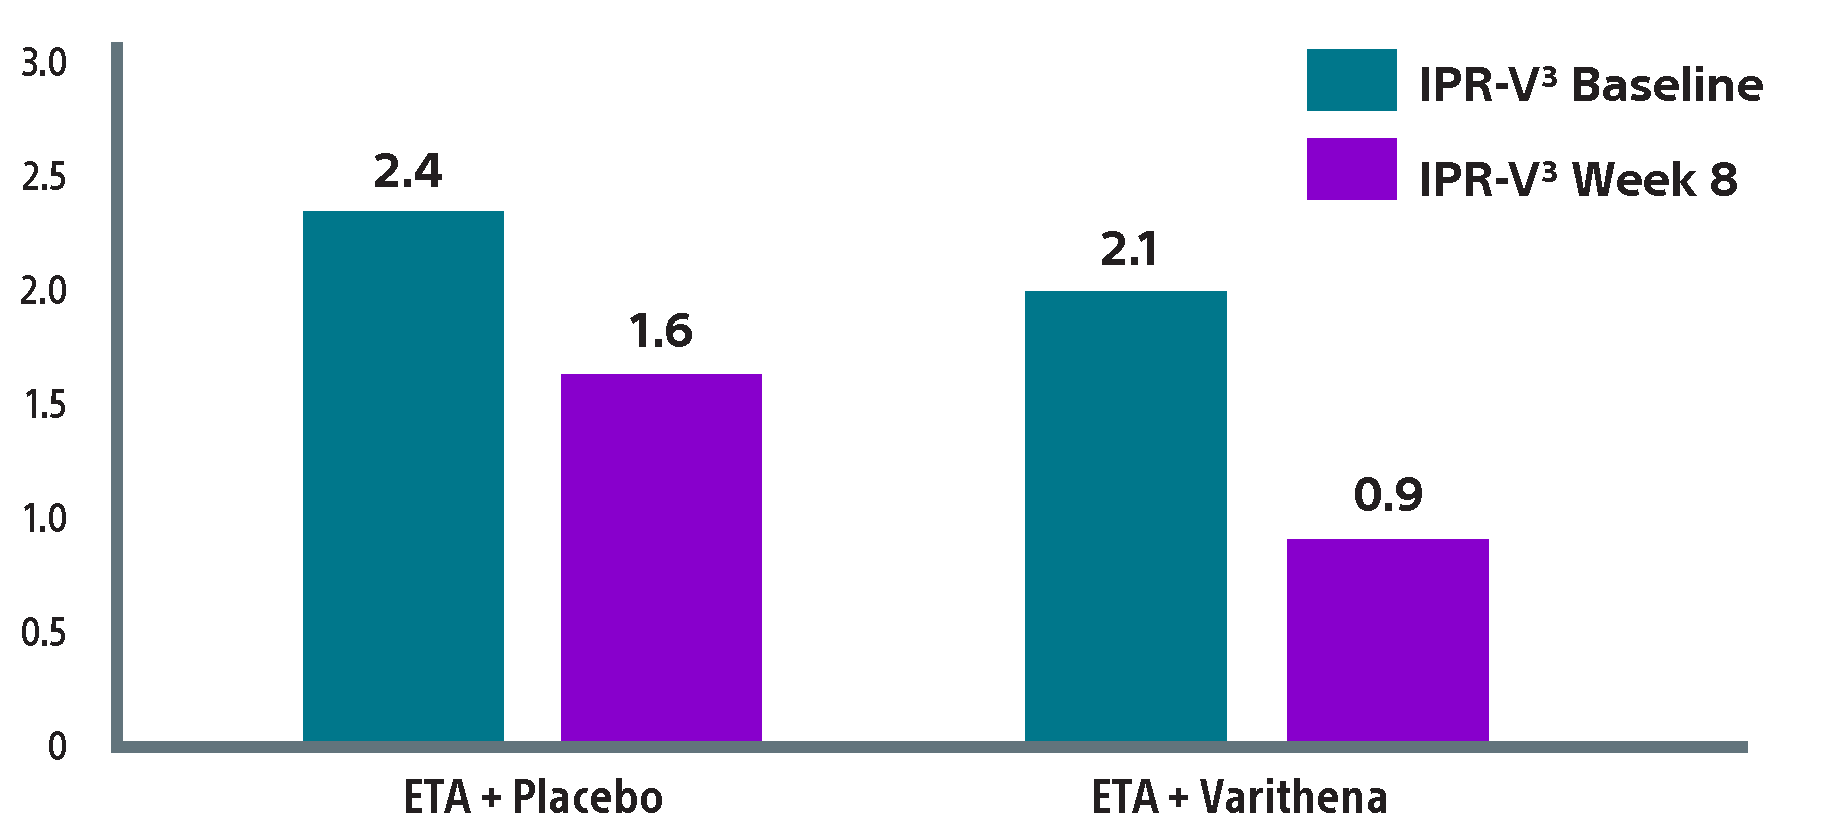 Bar graph comparing ETA (2.4) + Placebo (1.6) amd ETA (2.1) + Varithena (0.9)